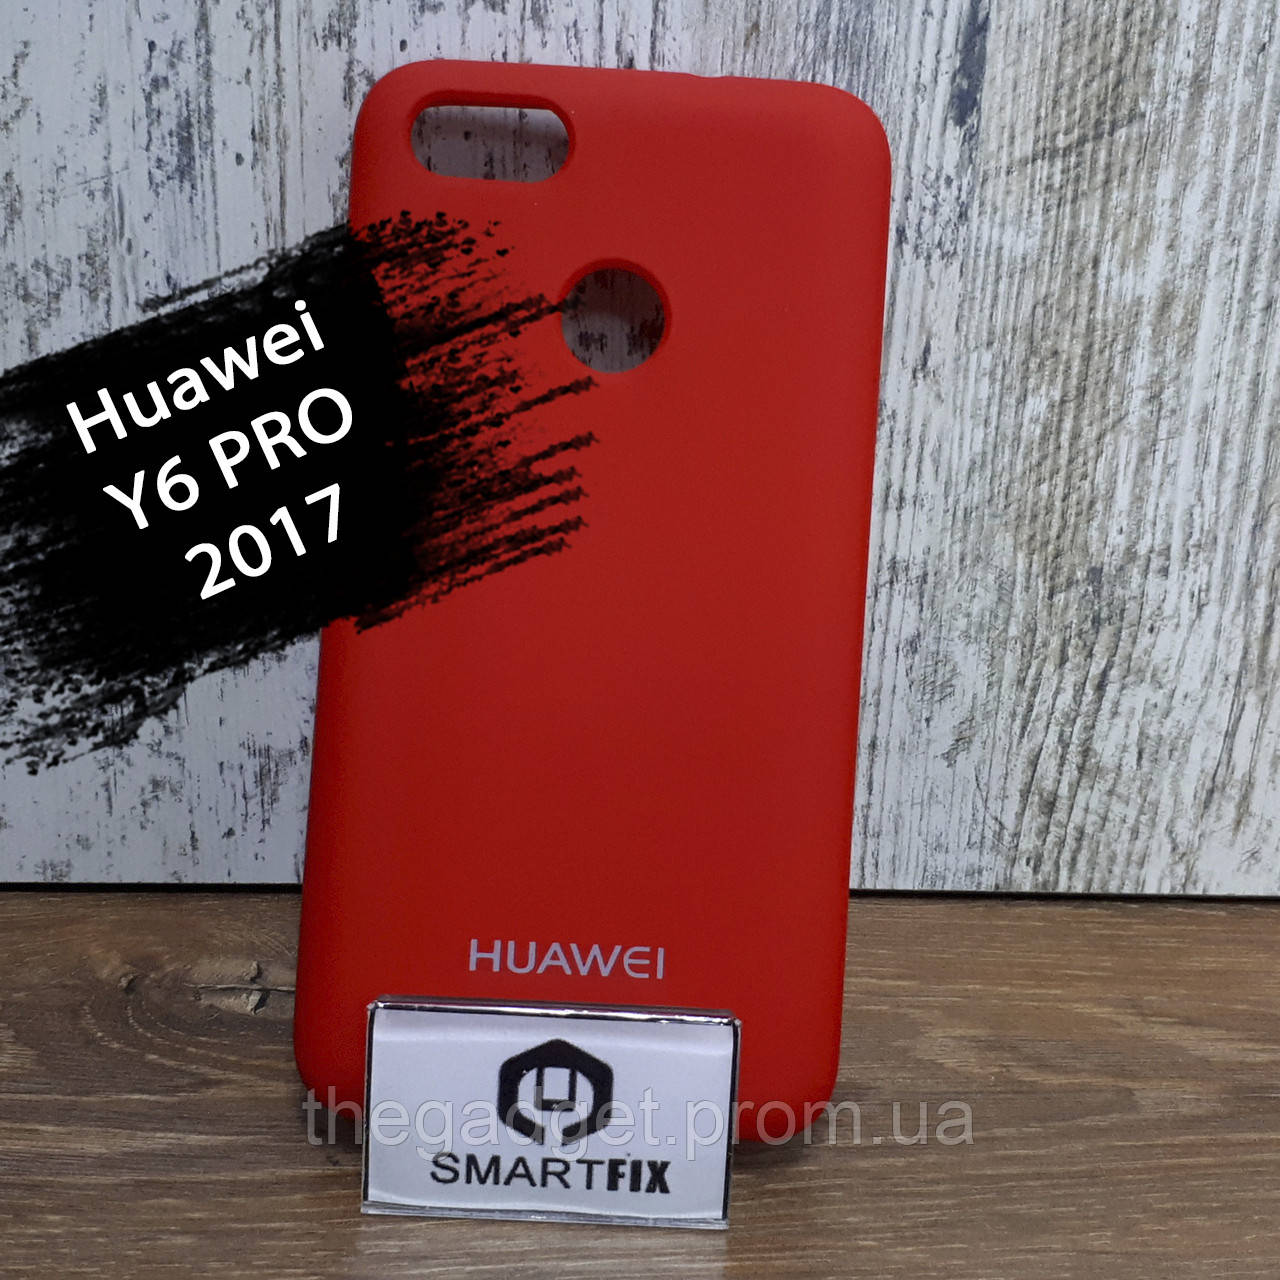 Силиконовый чехол для Huawei Y6 PRO (2017) / Nova Lite 2017 / P9 Mini (SLA-L02) Soft Красный